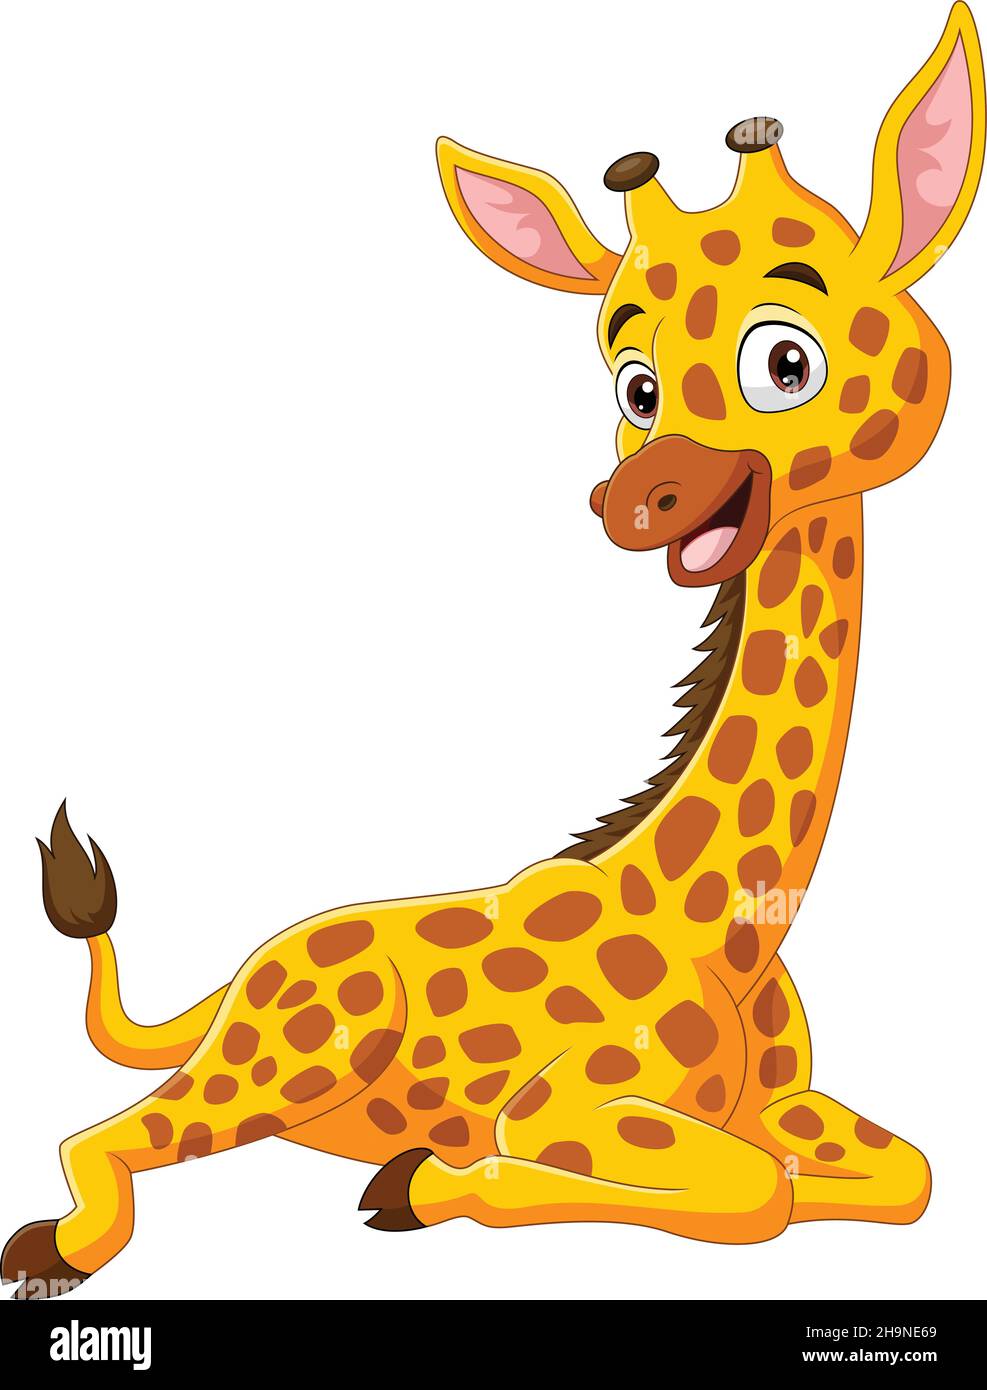 Dessin animé drôle petite girafe assis Illustration de Vecteur